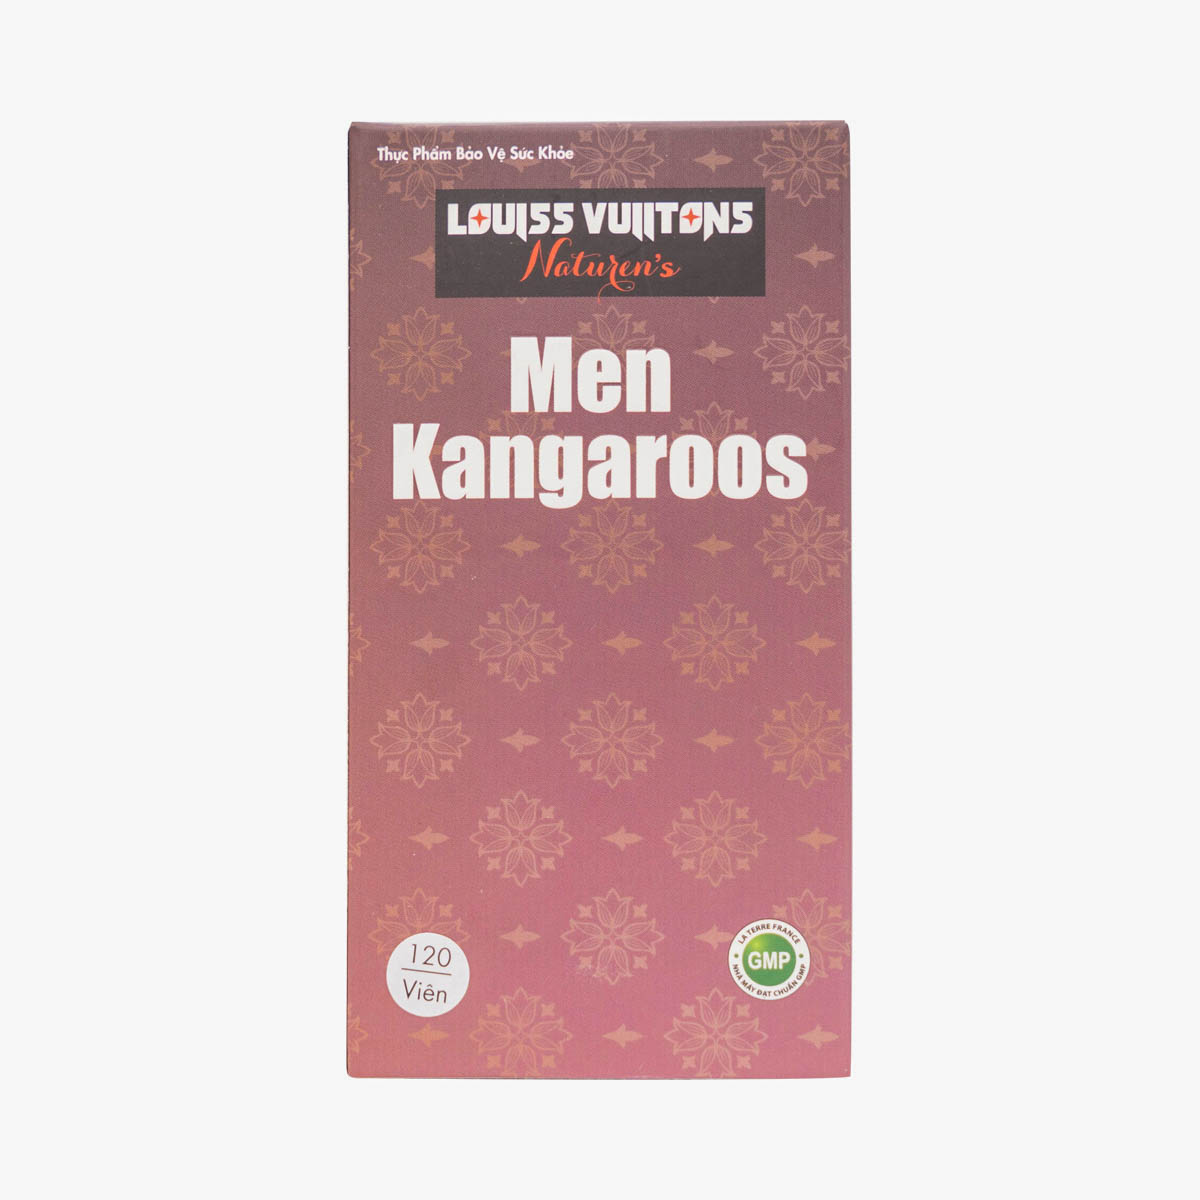 Men Kangaroos - Bổ thận tráng dương, tăng cường sinh lực nam giới